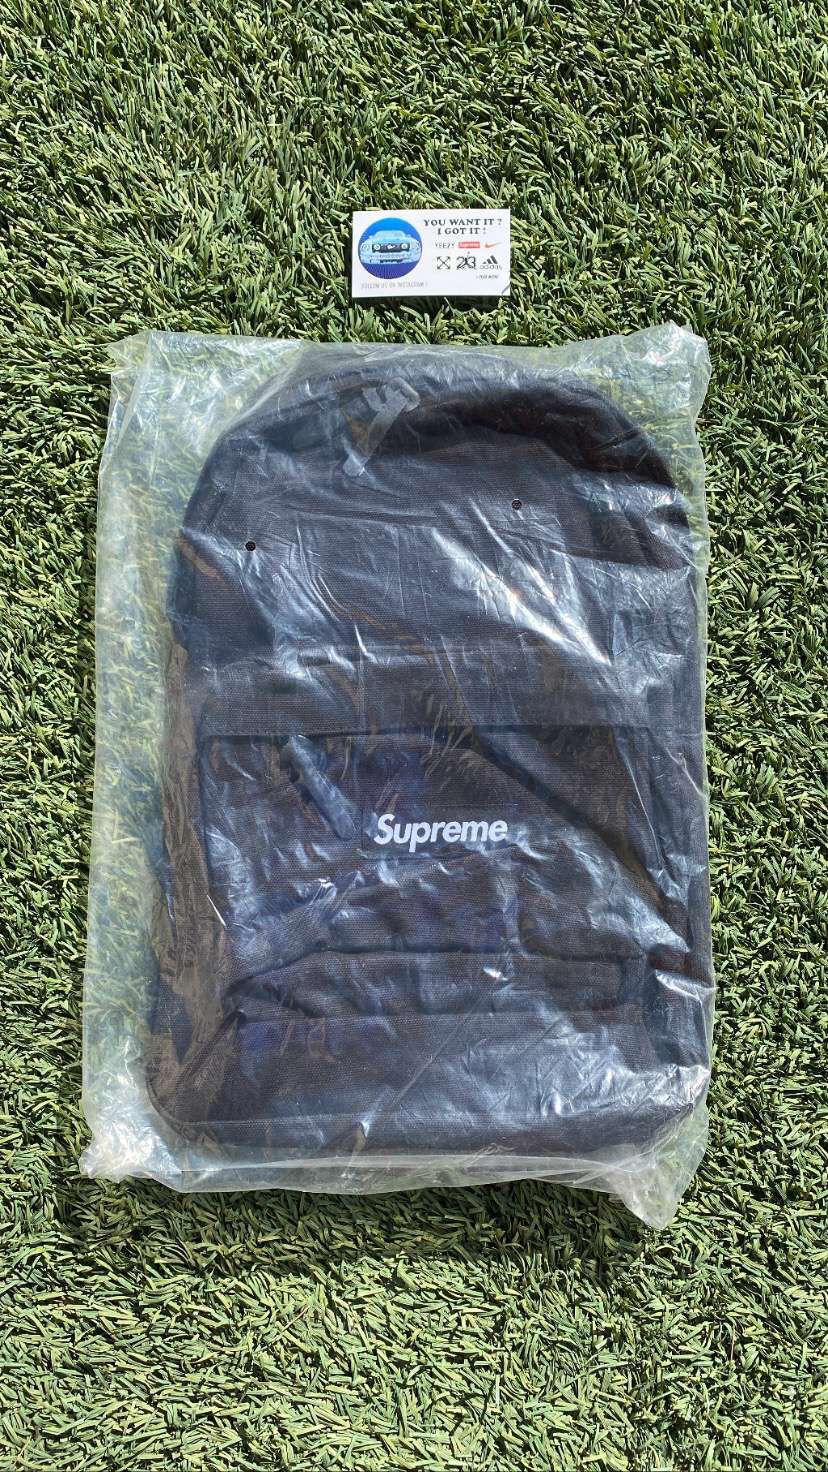 Supreme Black Canvas Backpack